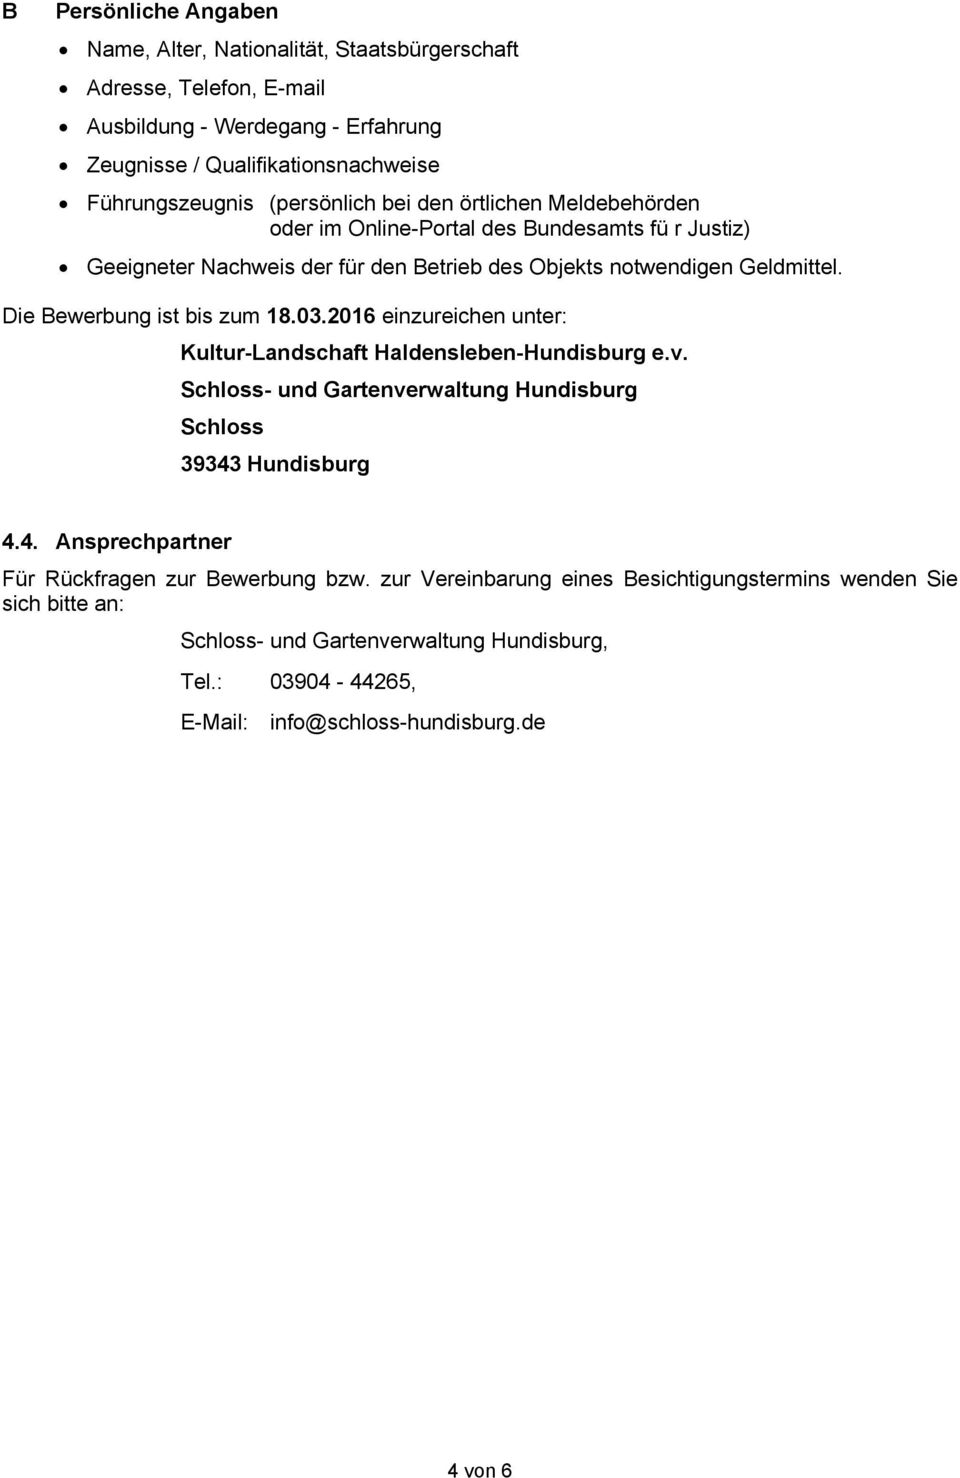 Die Bewerbung ist bis zum 18.03.2016 einzureichen unter: Kultur-Landschaft Haldensleben-Hundisburg e.v. Schloss- und Gartenverwaltung Hundisburg Schloss 39343